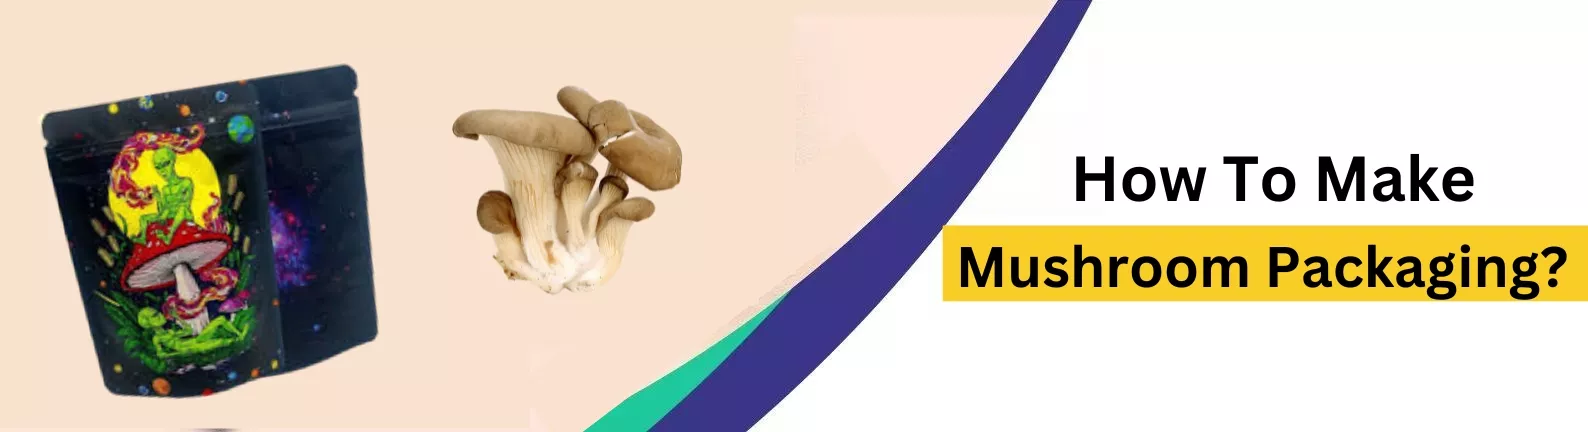 How To Make Mushroom Packaging